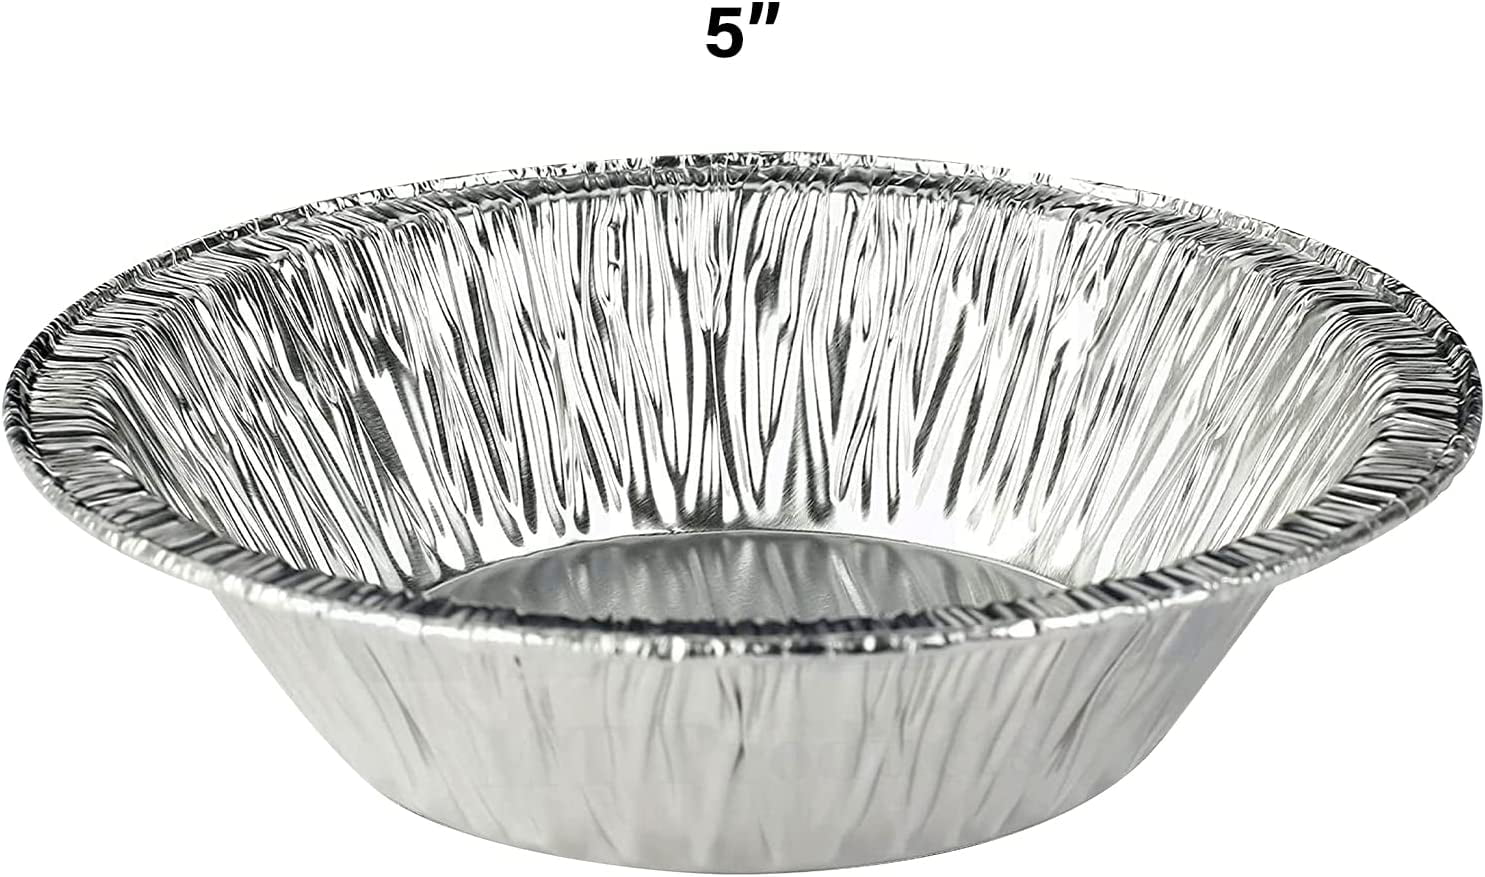 Shop Small 5 Foil Pie Pans: Silver Disposable Pie Pans: 5 Pie